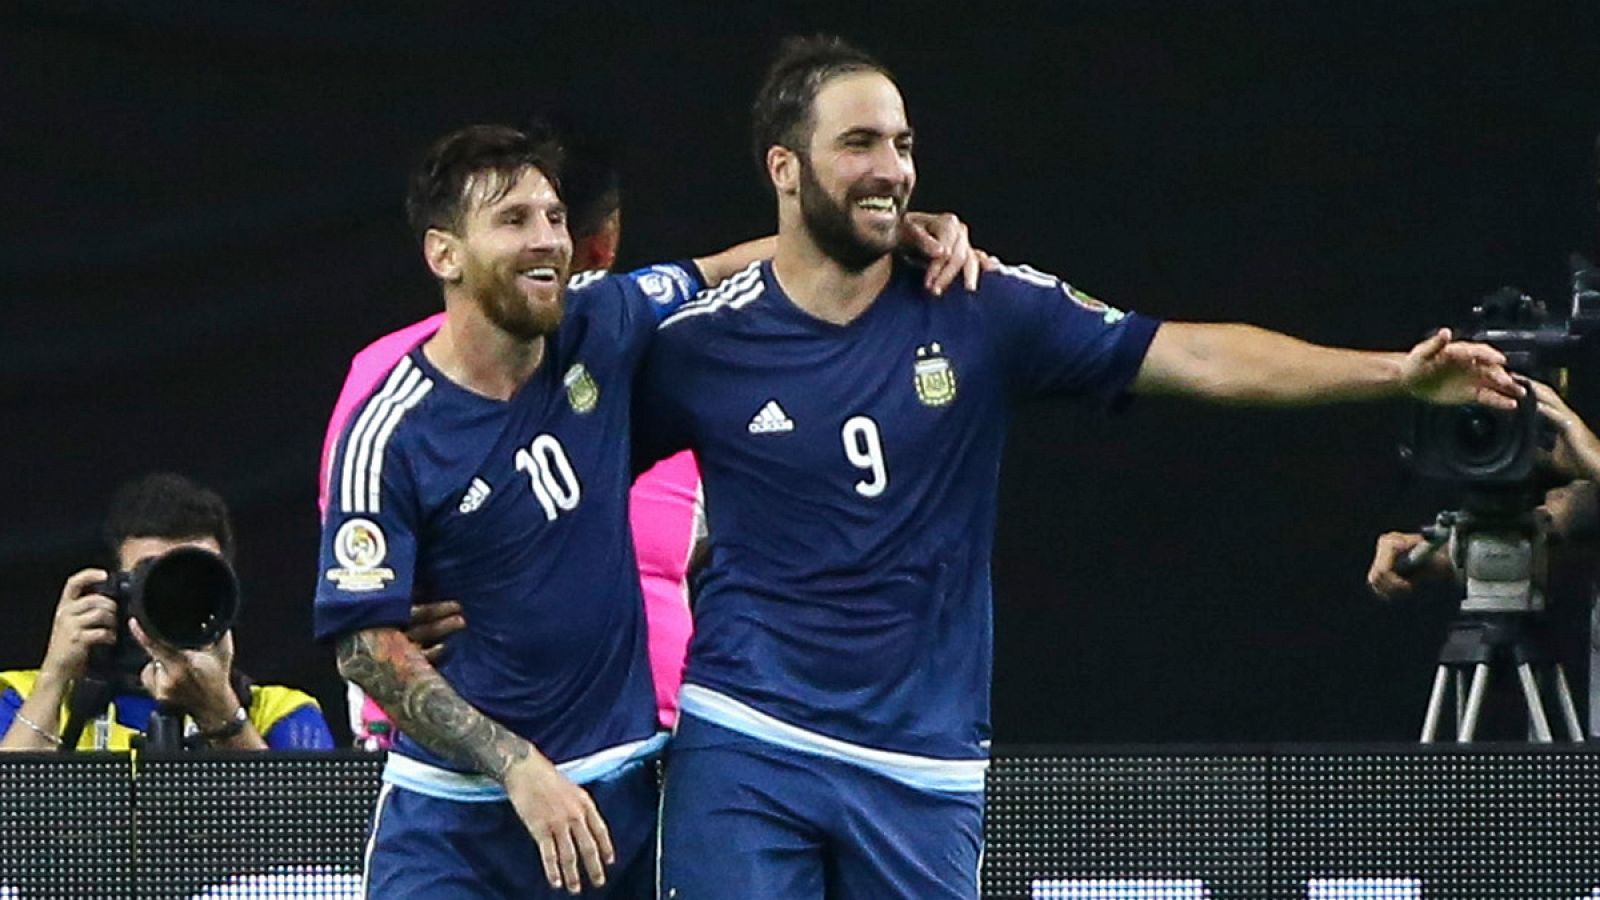 Los jugadores de la selección de Argentina, Lionel Messi y Gonzalo Higuaín, celebran la victoria en semifinales de la Copa América contra Estados Unidos.